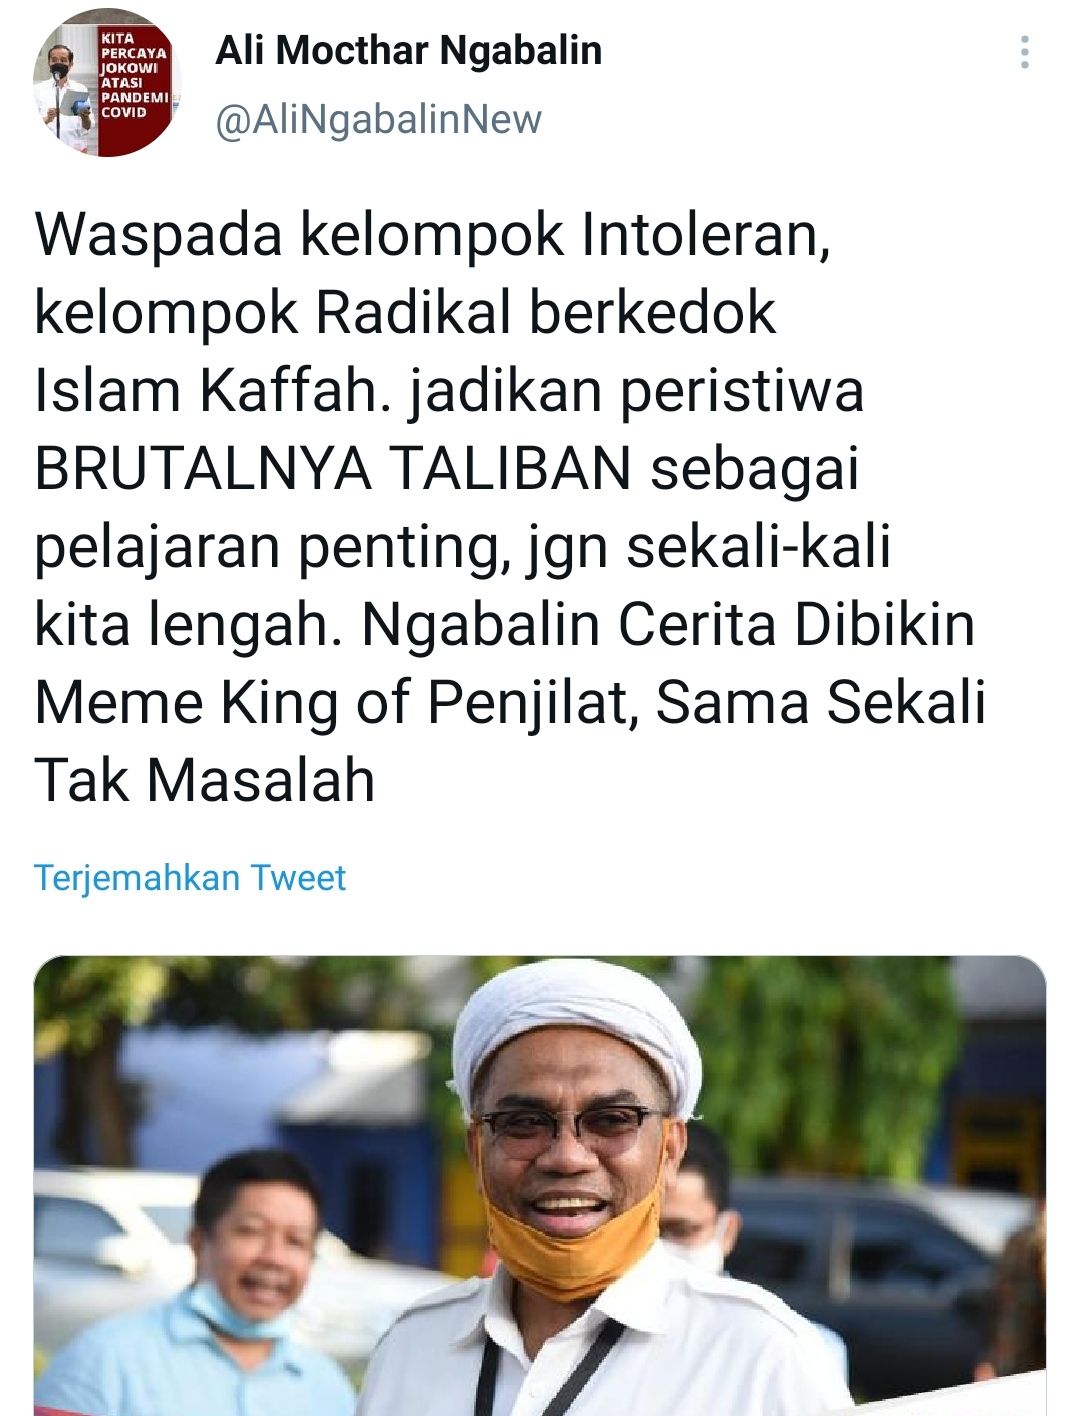 Tangkapan layar cuitan Ali Mochtar Ngabalin soal meme 'King of Penjilat'./